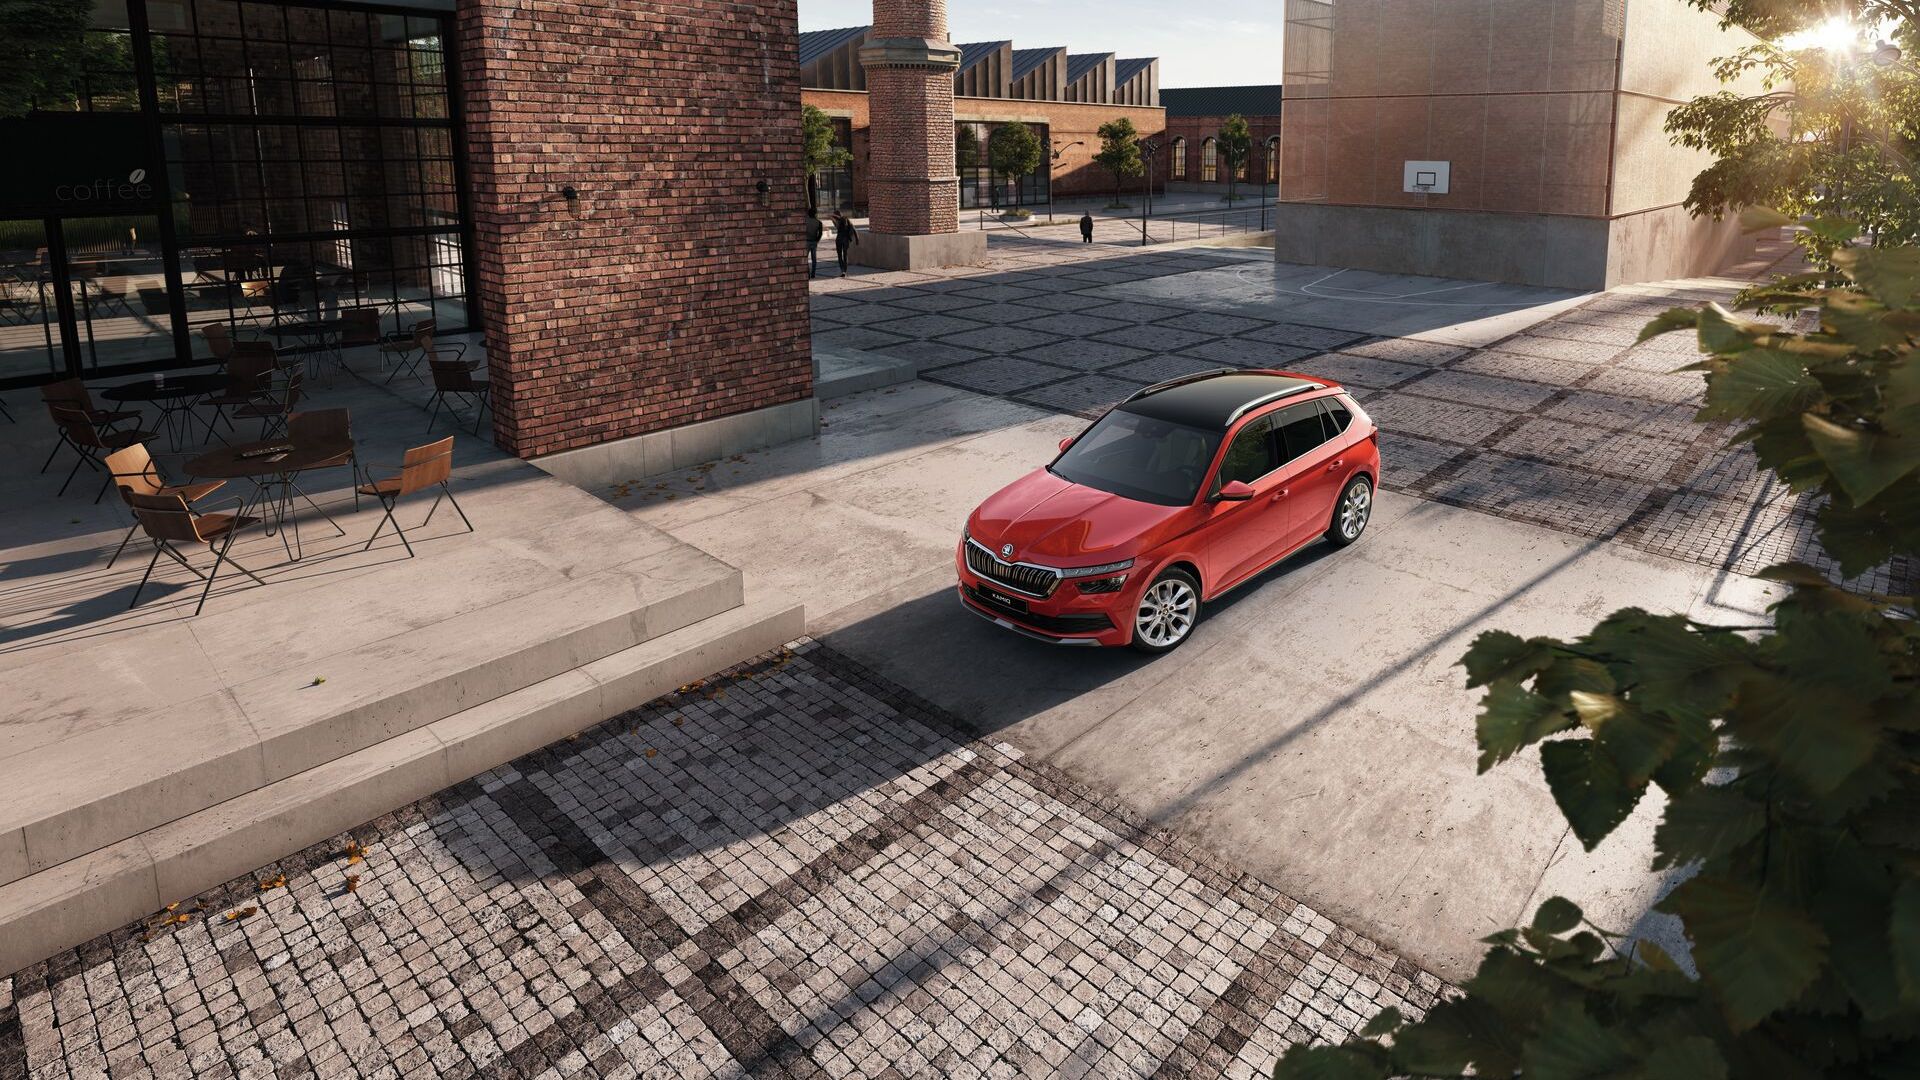 Zu sehen ist ein roter Škoda Kamiq auf einem Parkplatz. Das Auto ist von oben zu sehen. 